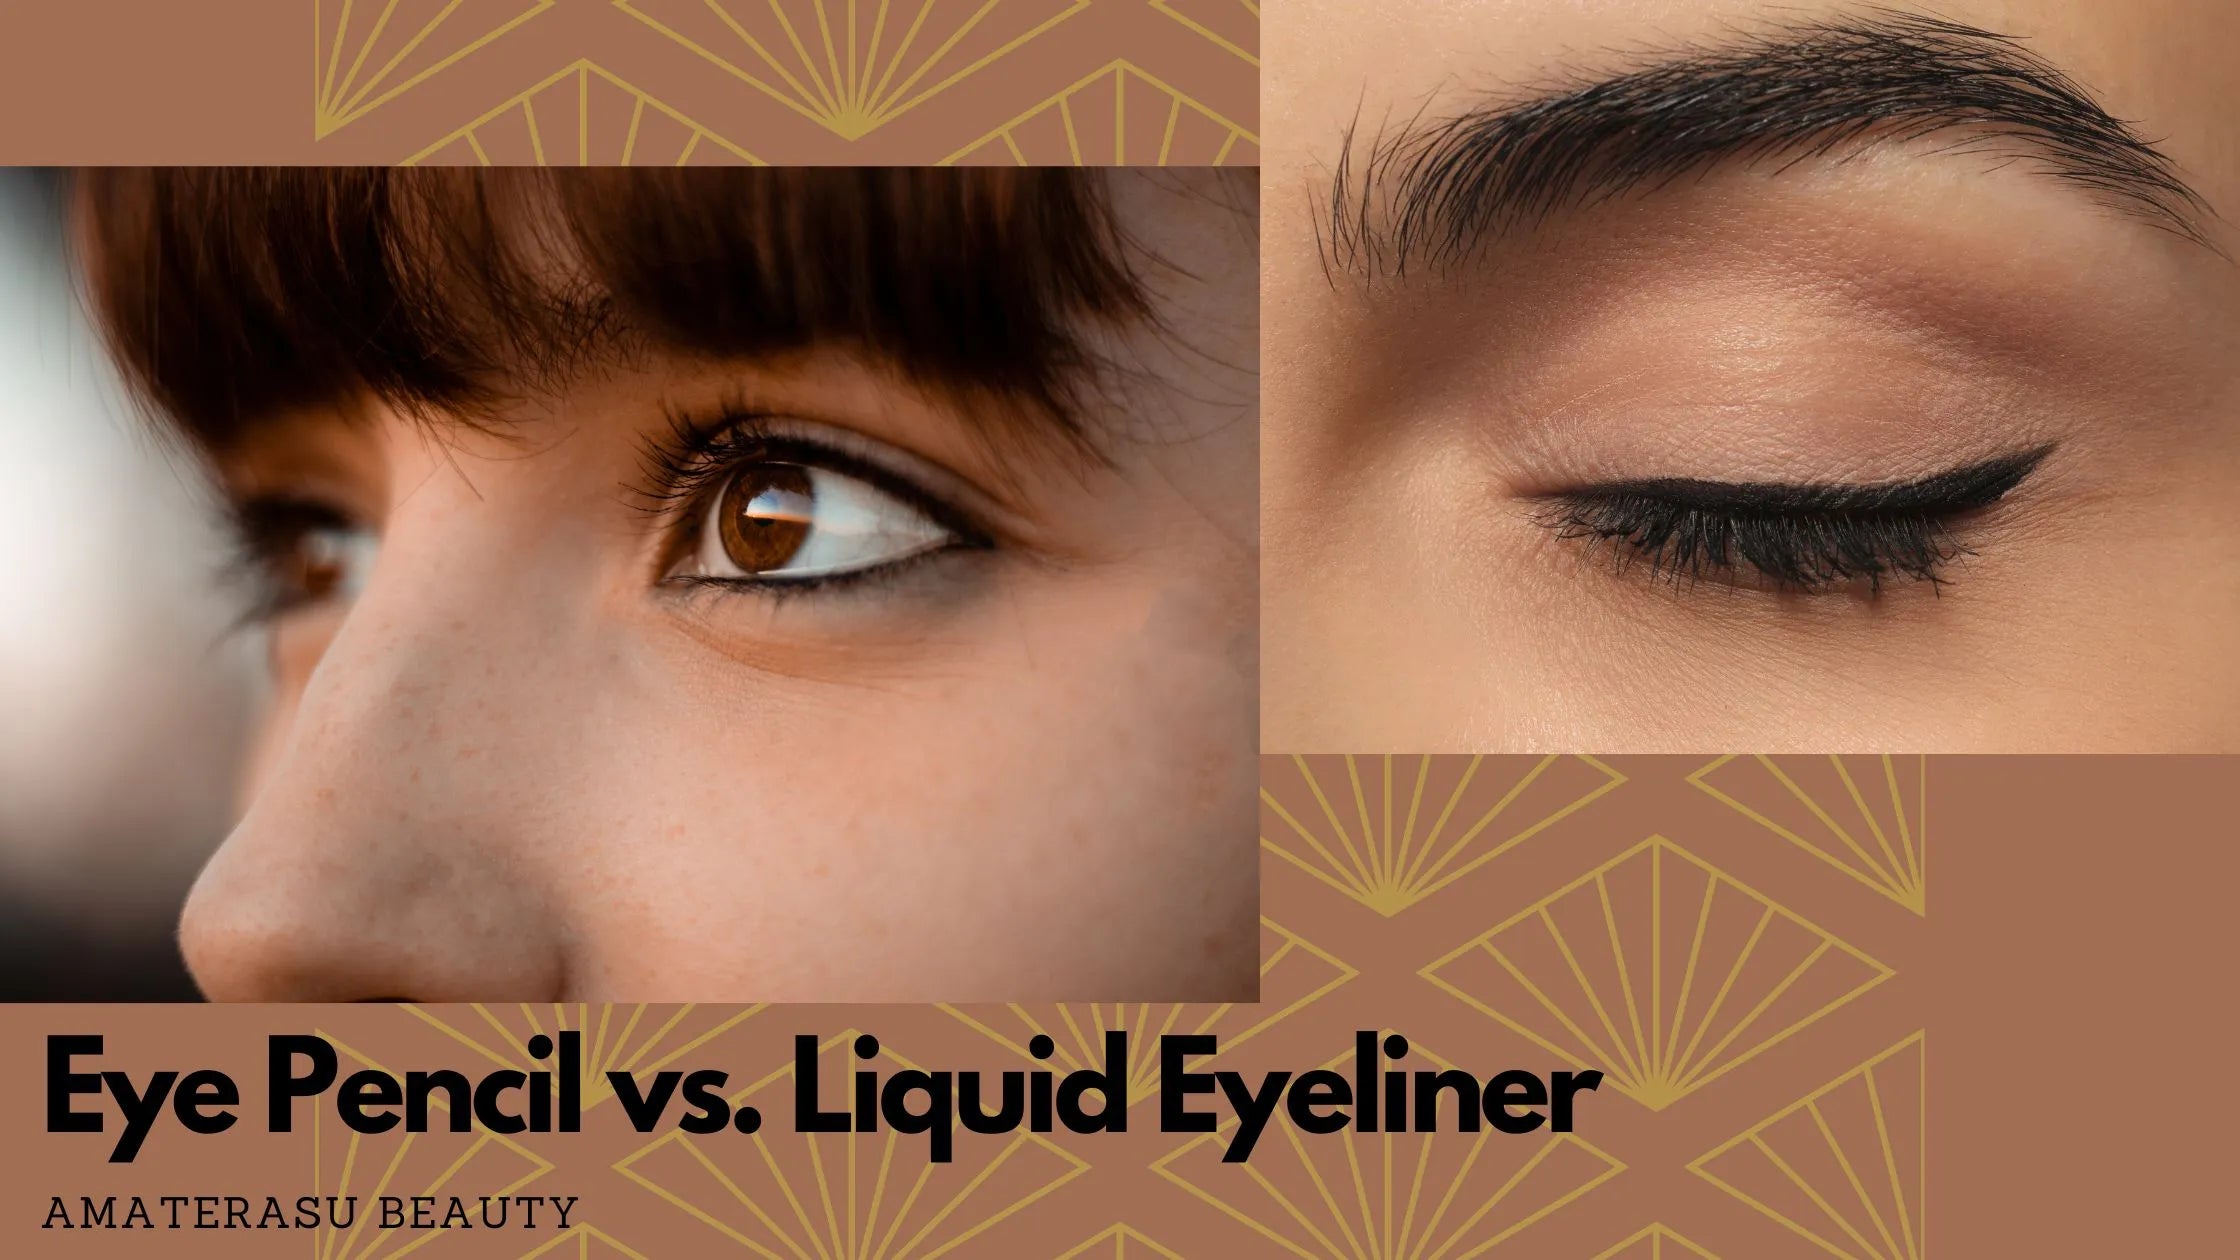 Eye Pencil vs. Liquid Eyeliner